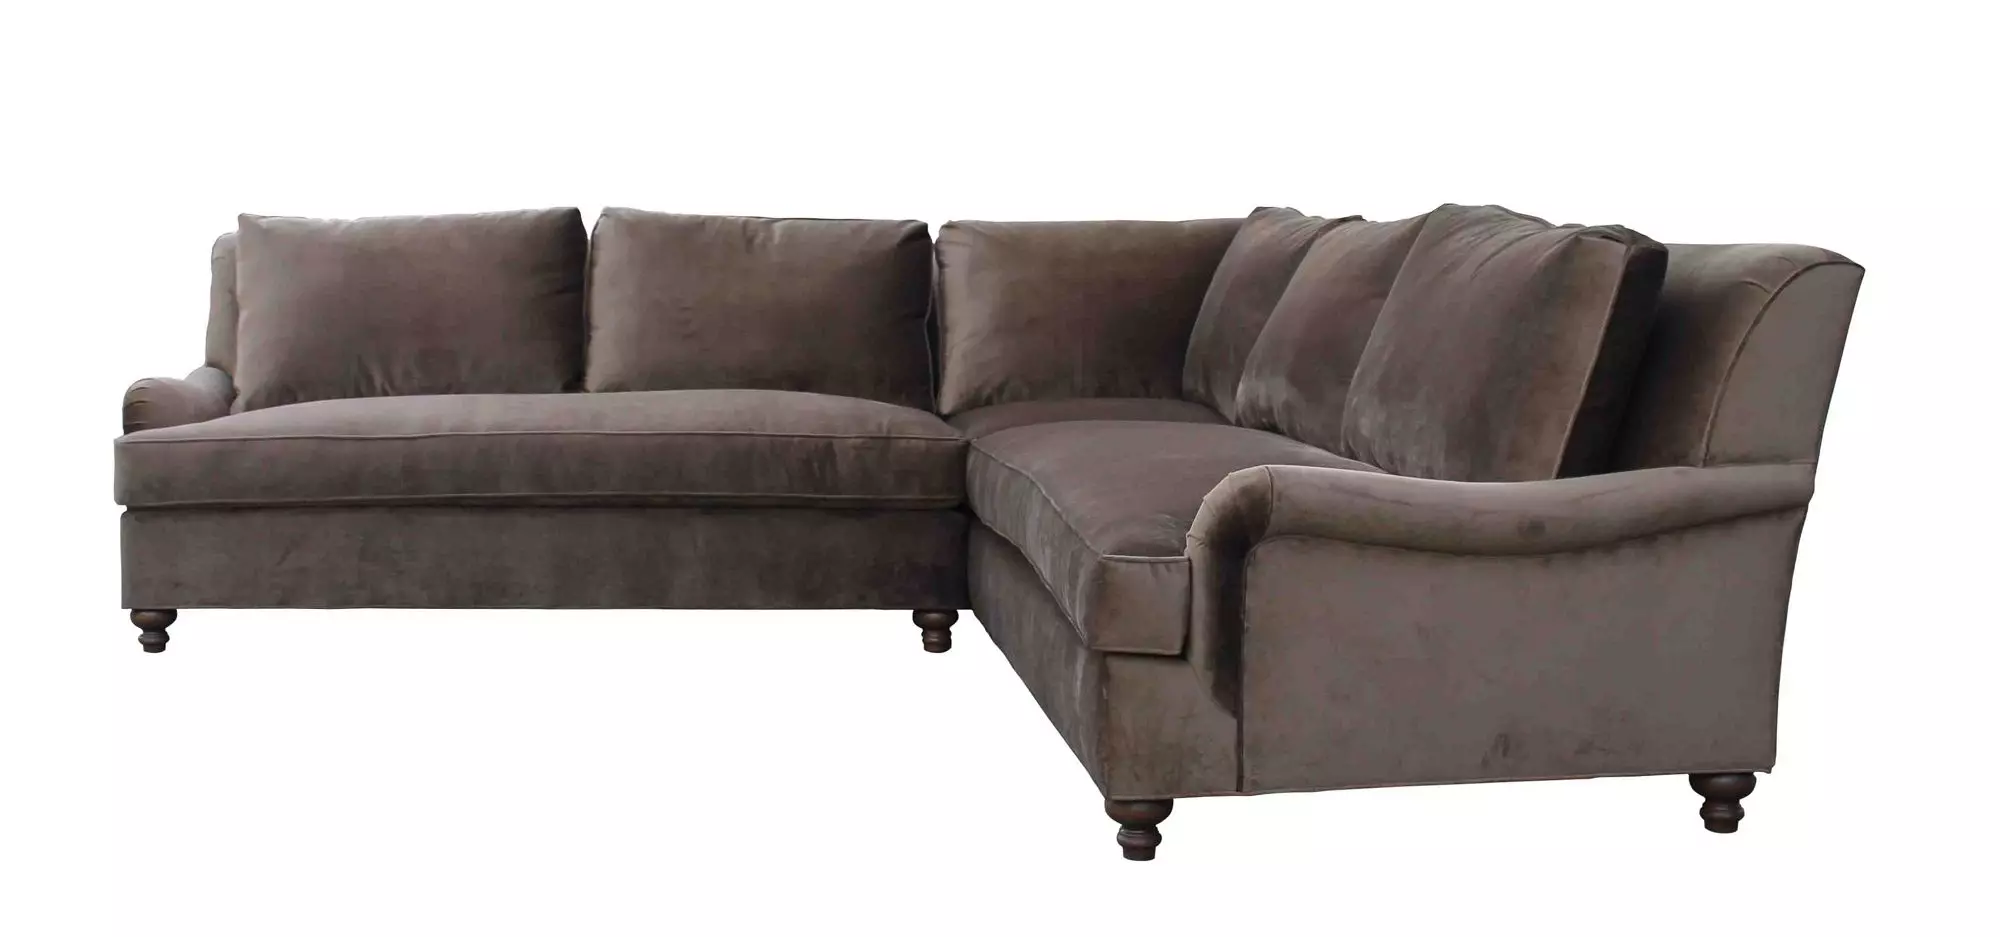 Top 10 stilarter af sofaer med karakter